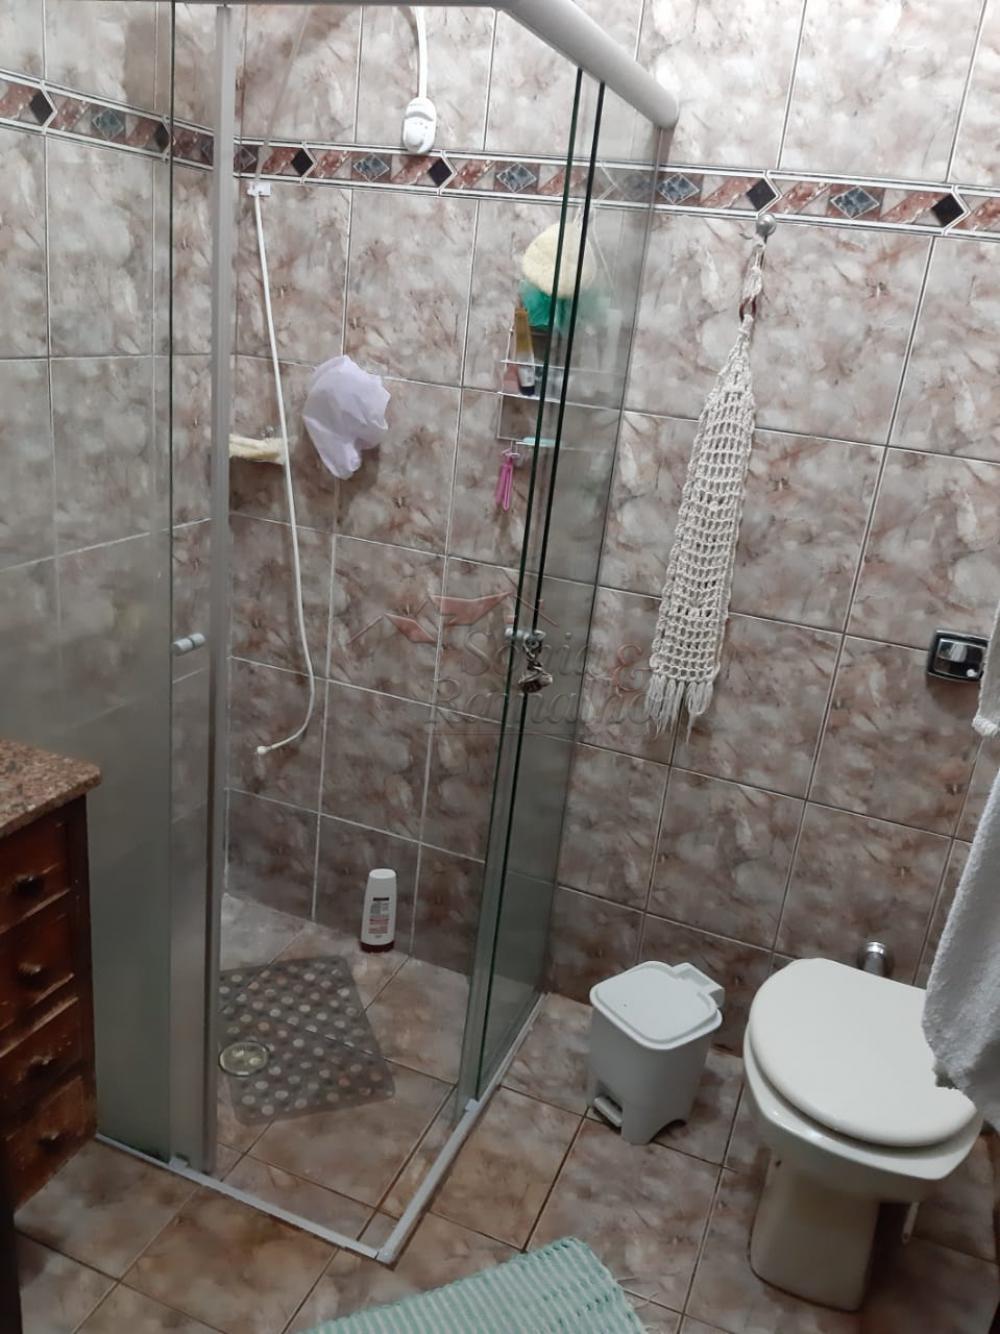 Comprar Casas / Padrão em Ribeirão Preto R$ 380.000,00 - Foto 21